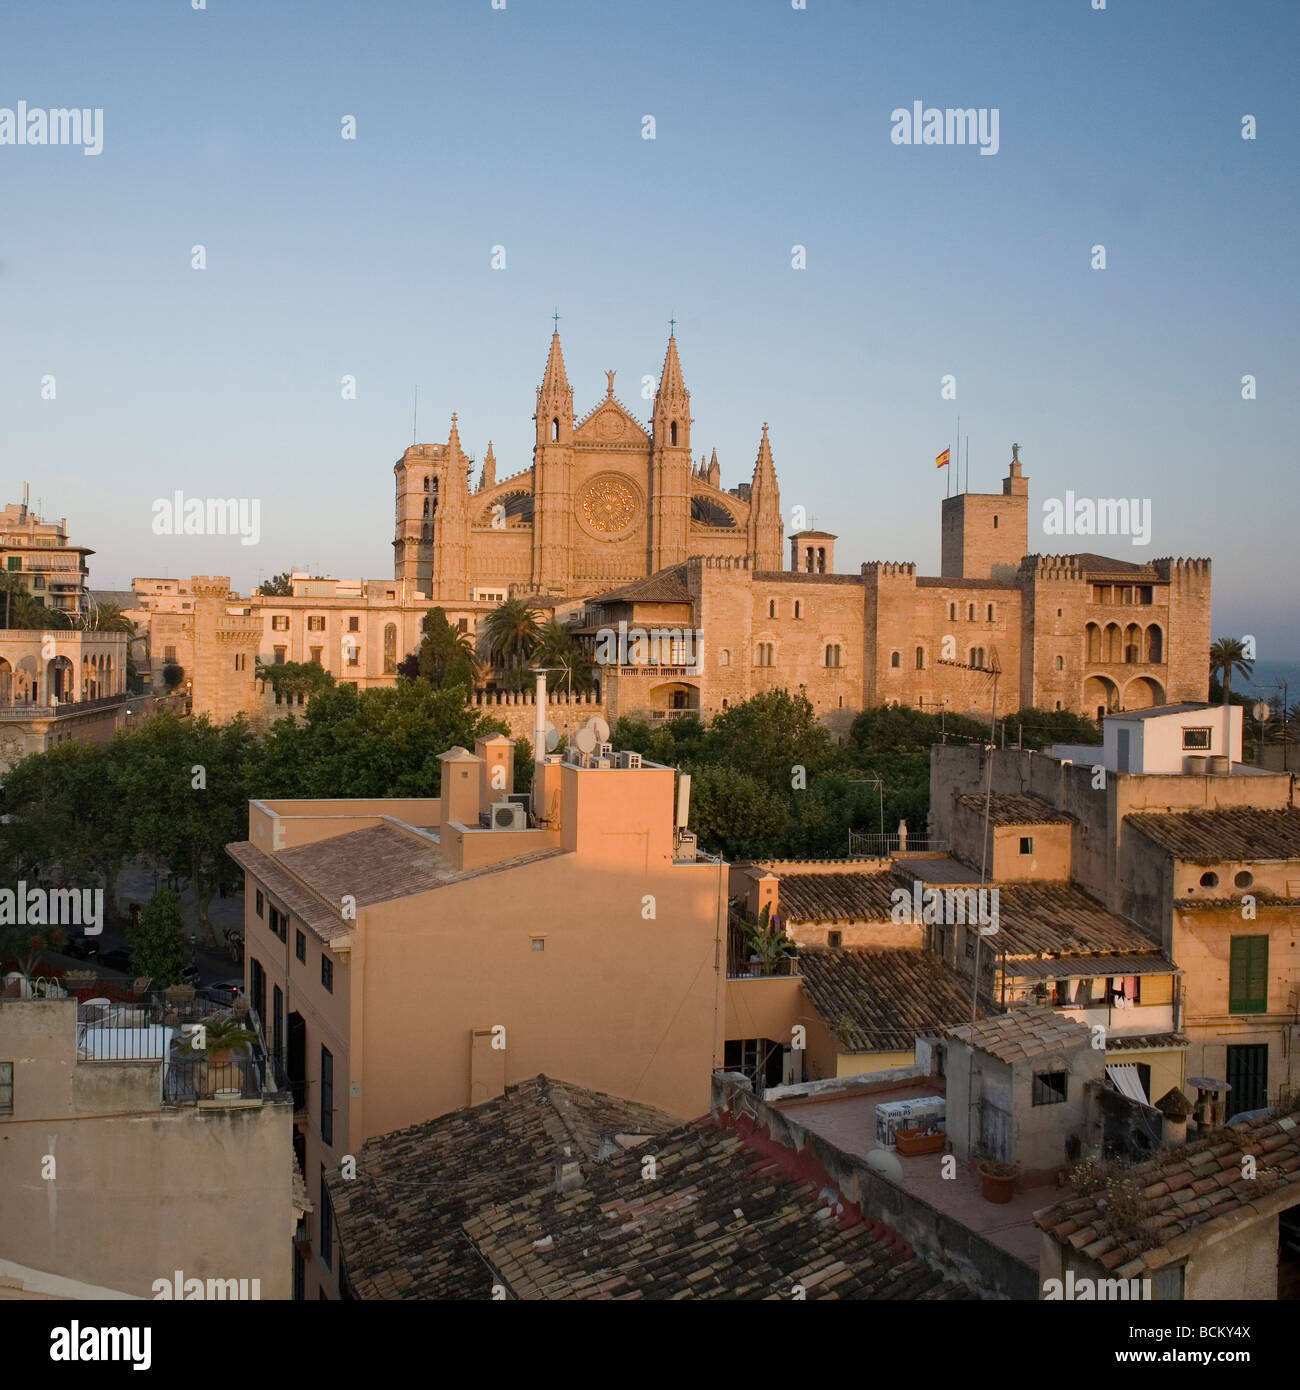 Cathedral, Palma, Majorca, Spain Stock Photo